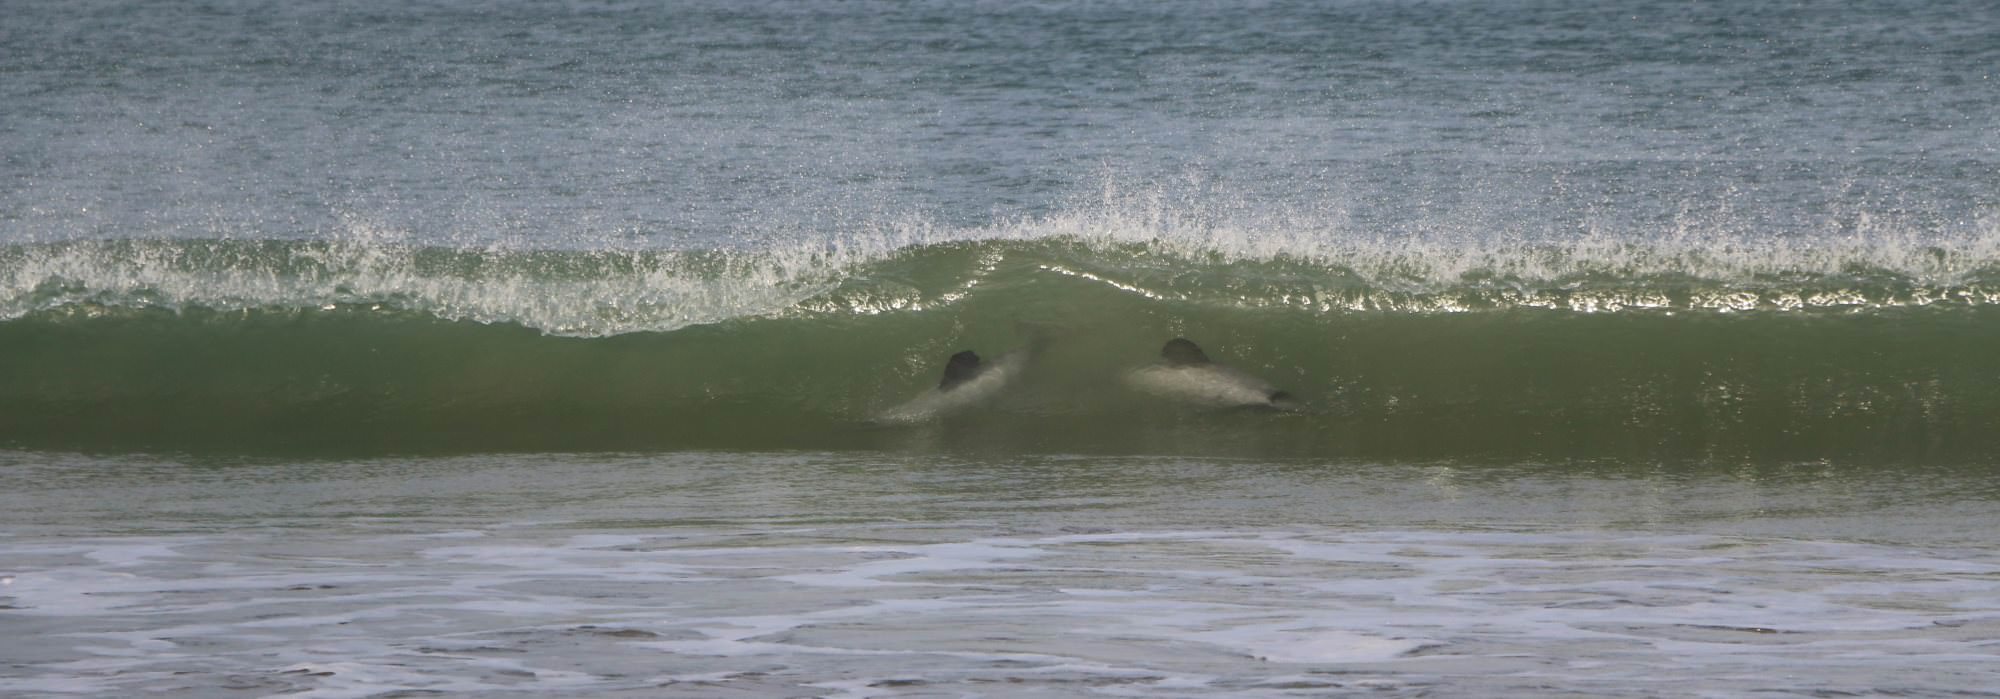 Delphine in einer Welle am Curio Bay